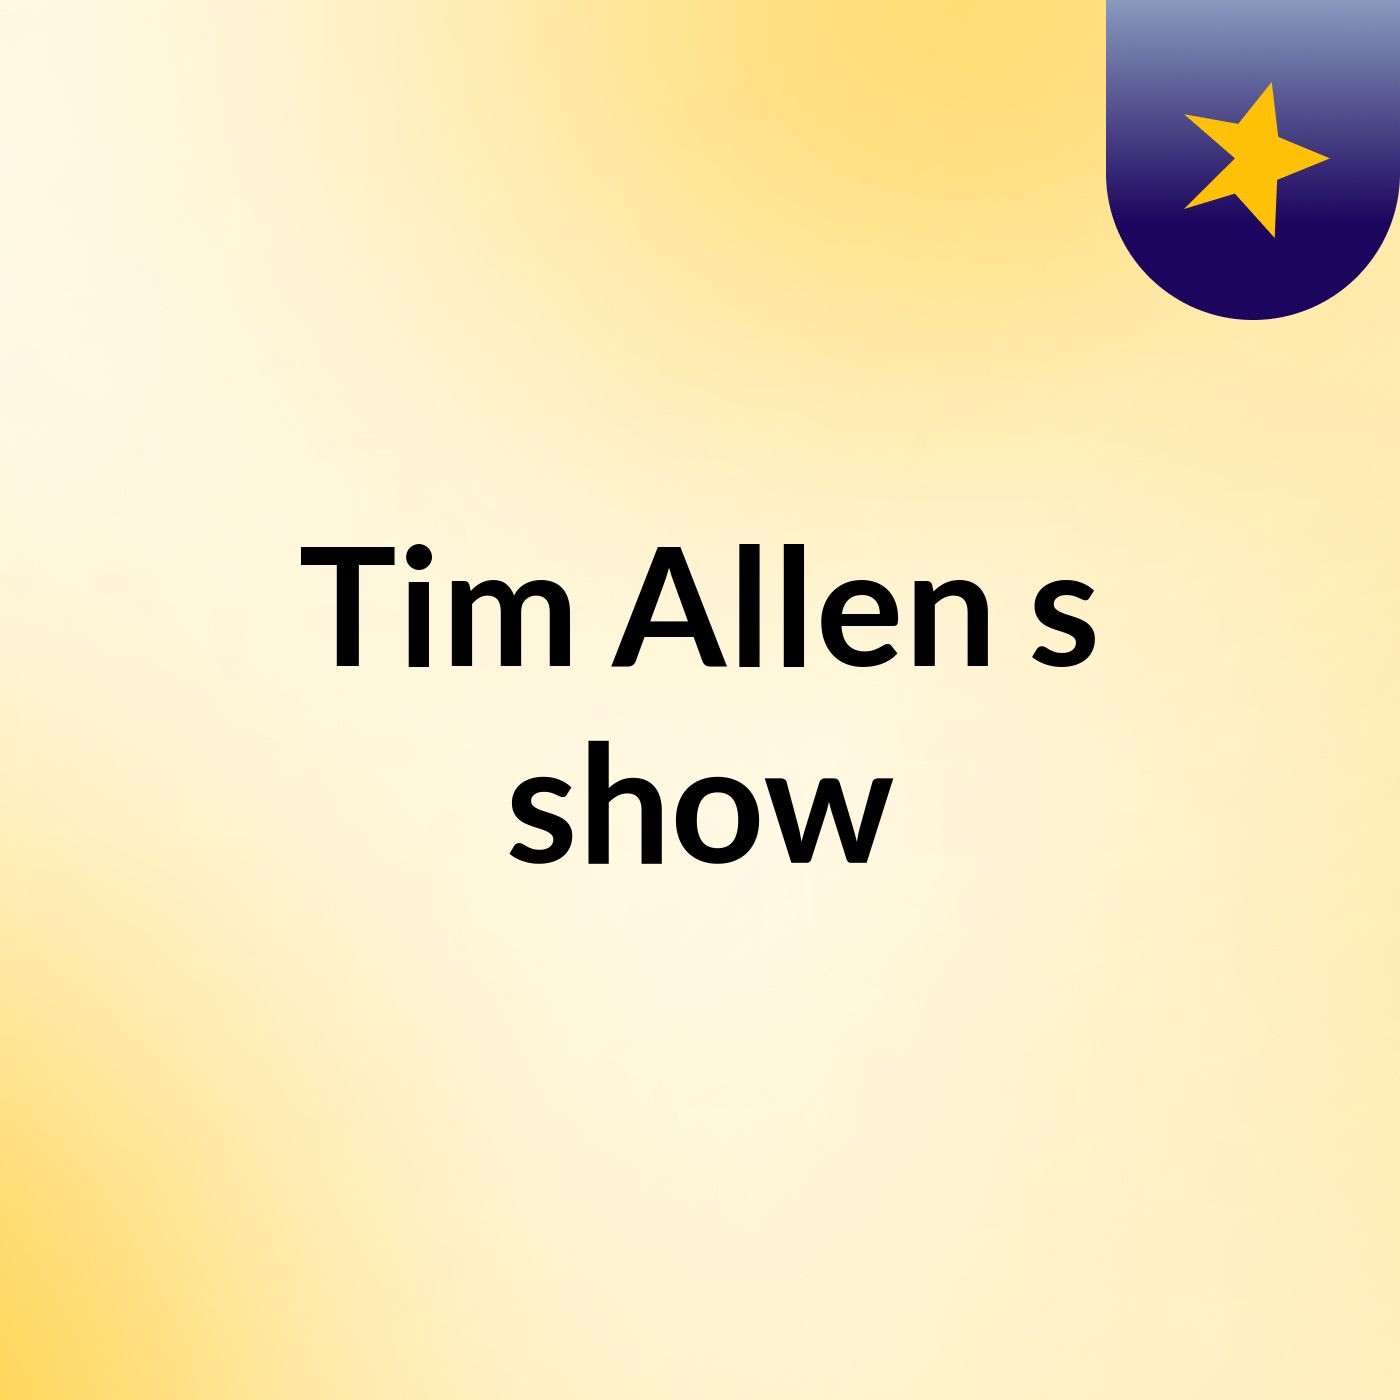 Tim Allen's show